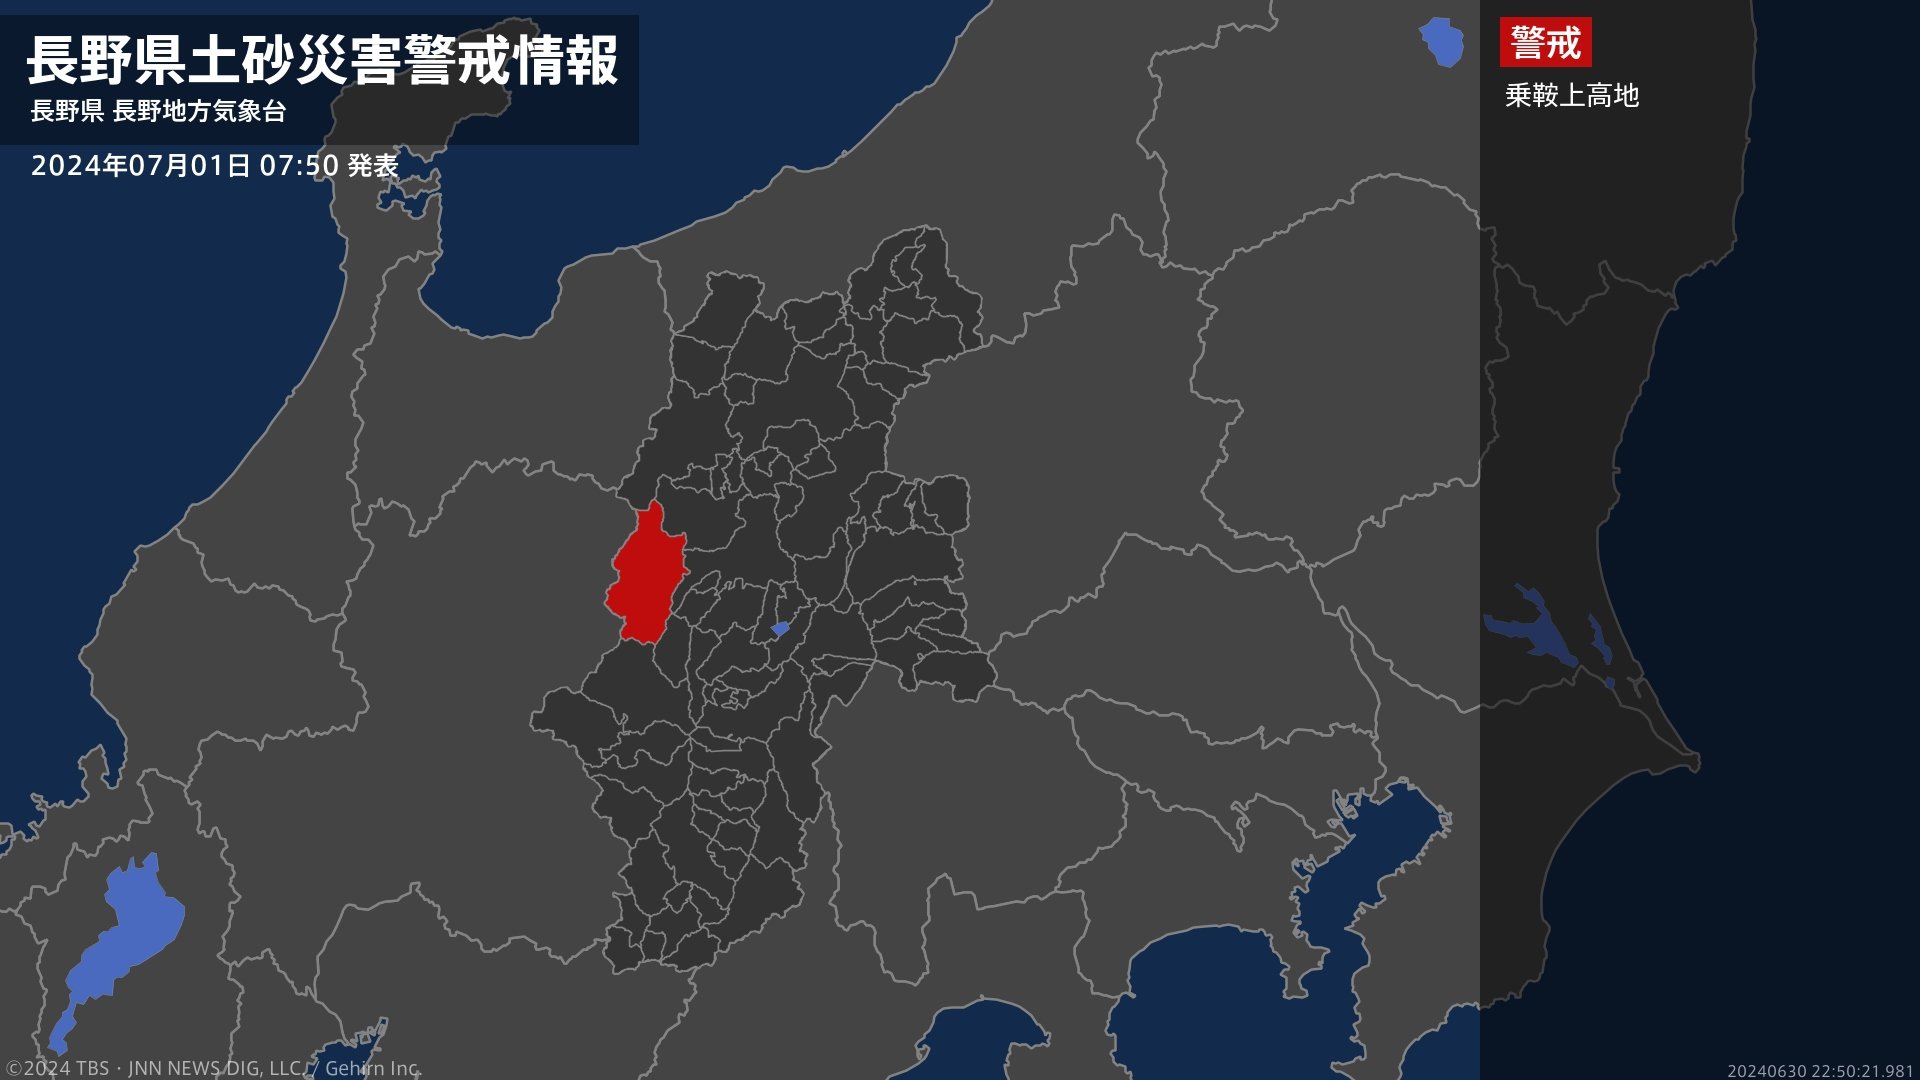 【土砂災害警戒情報】長野県・乗鞍上高地に発表